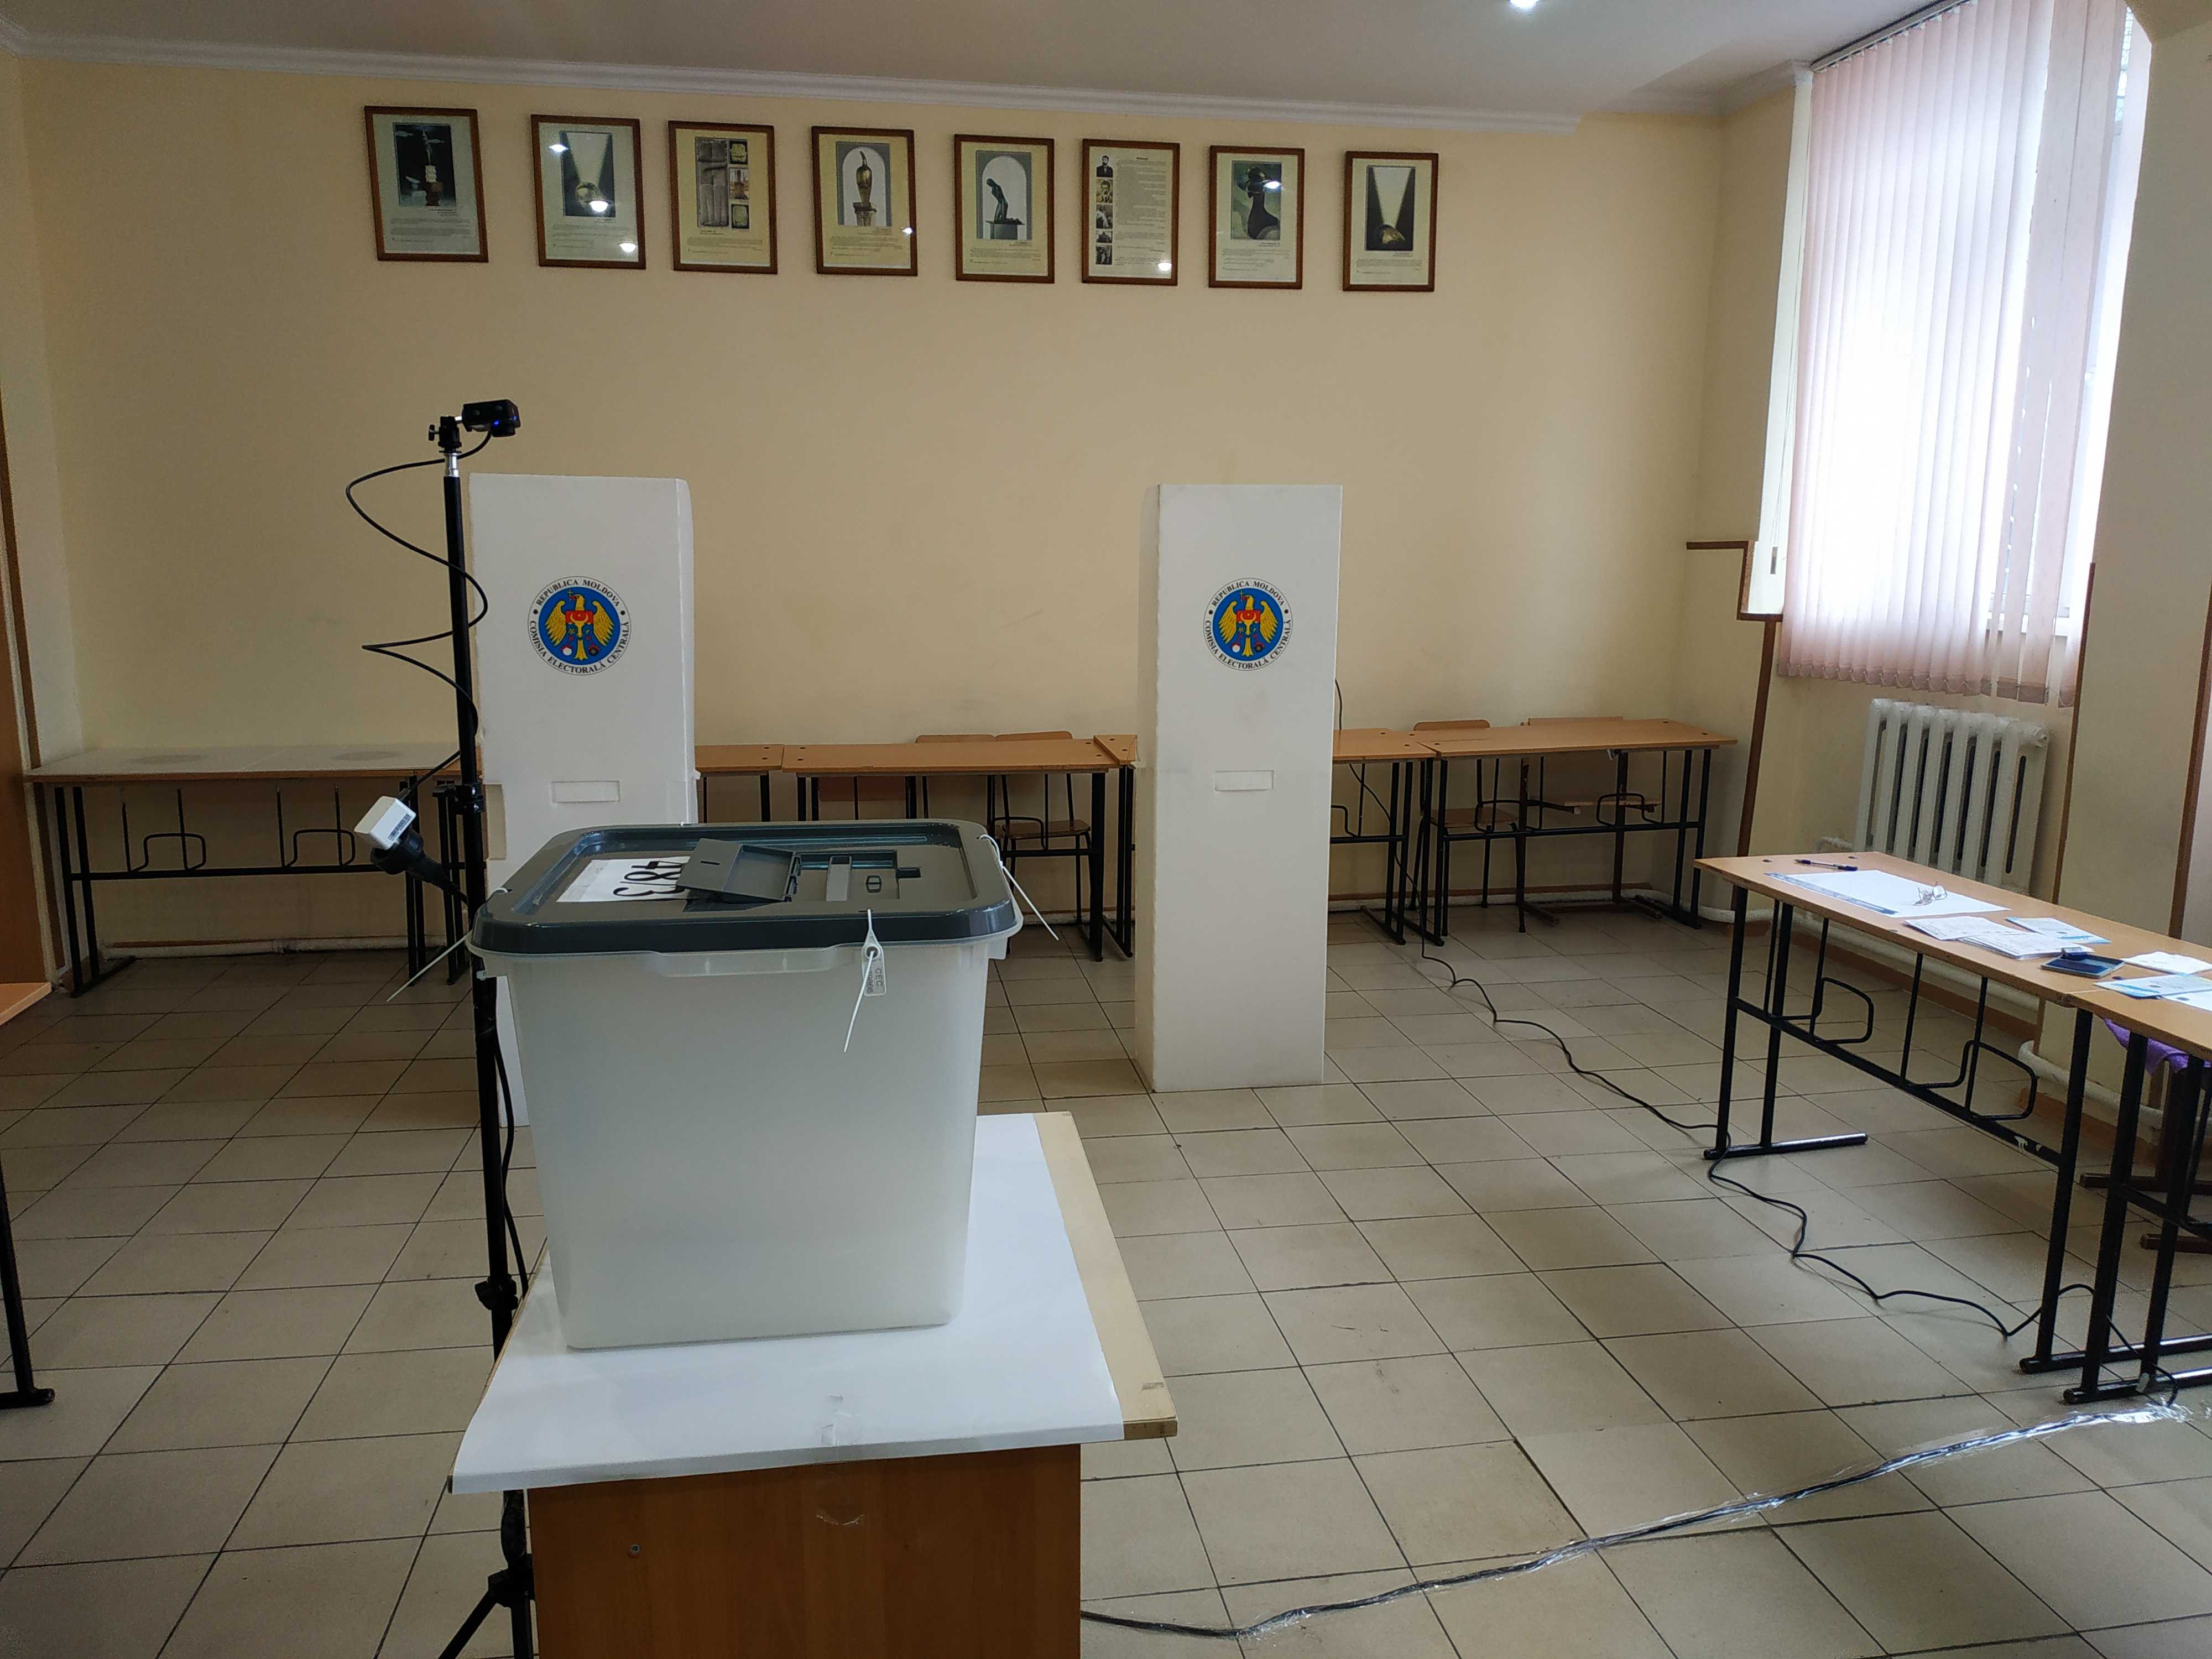 К 12 проголосовал всего один человек. Явка на участках в Кишиневе, где голосуют приднестровцы